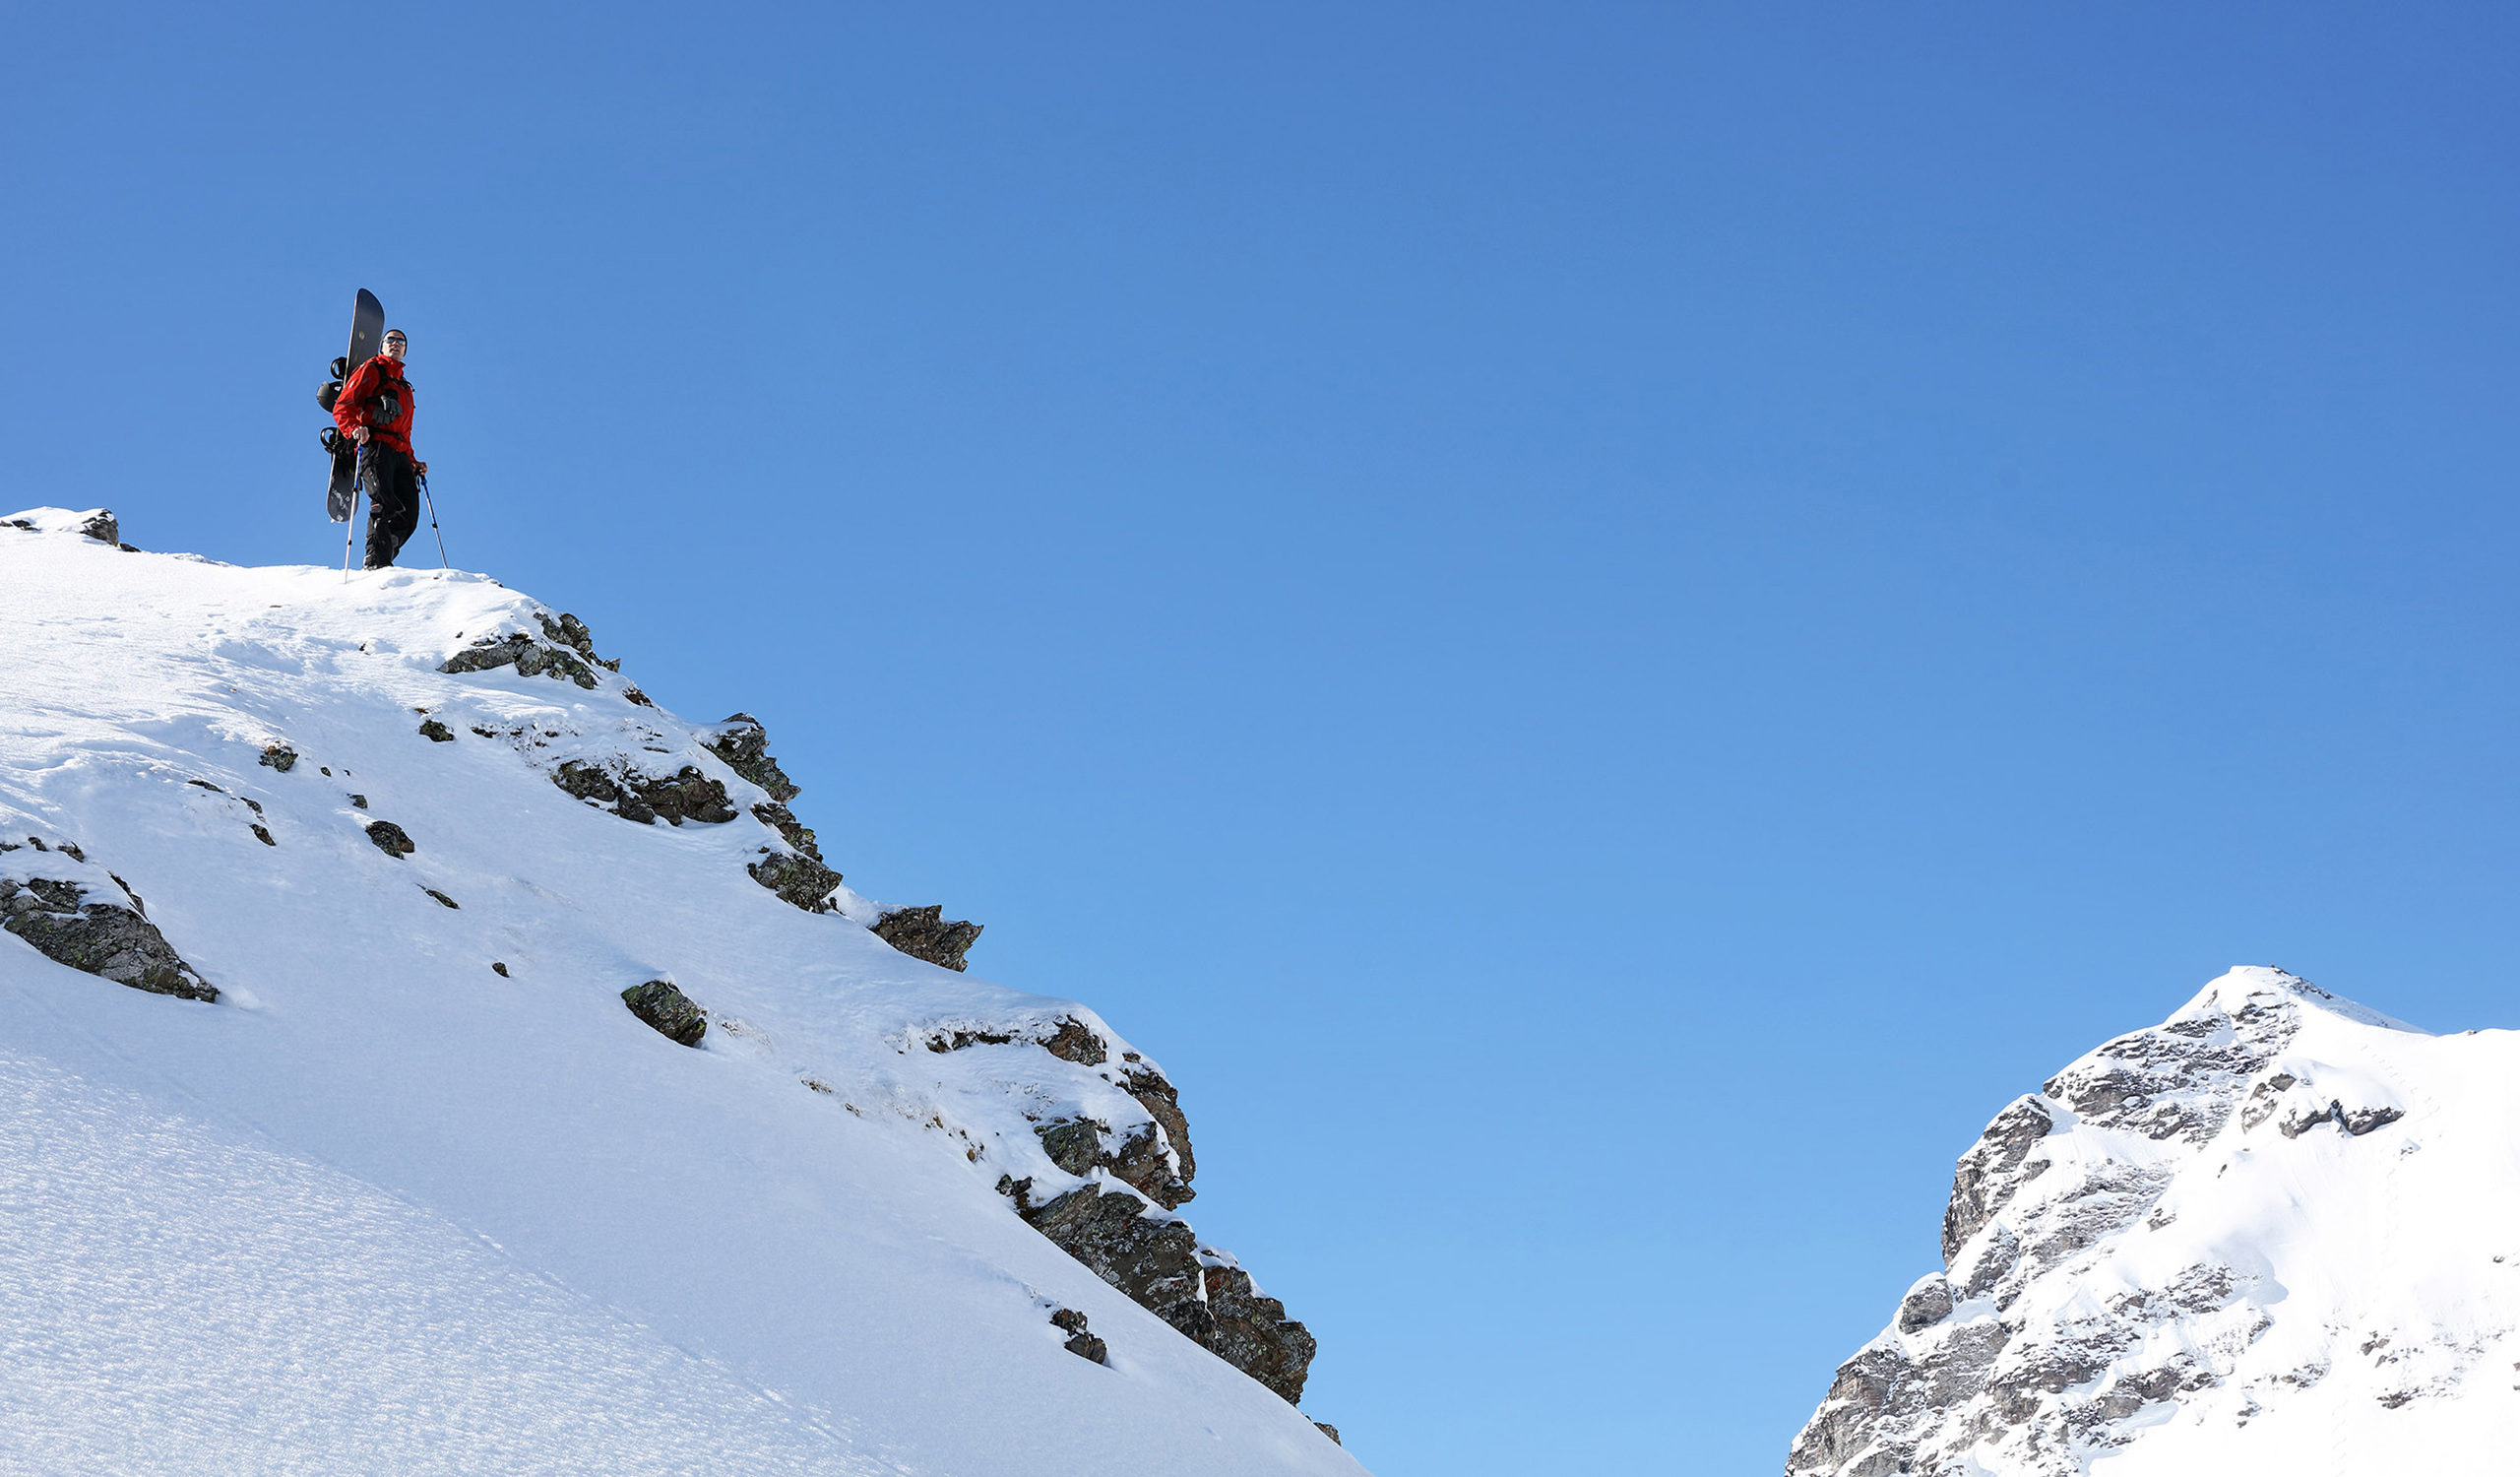 Reiten im Pulverschnee an einem schönen Tag in den Schweizer Alpen. Freeriden ist in der Schweiz sowohl bei Snowboardern als auch bei Skifahrern beliebt. Es gibt Zeiten im Winter, in denen die Berge vom Abenteuer sprechen. Der Wind weht warm aus dem Süden, um die kommenden Veränderungen anzukündigen, die Sonne verweilt noch ein wenig länger, aber dennoch schenkt der Himmel in seiner sanften Liebenswürdigkeit diesen Ländern einen frischen Spritzer unberührten Pulvers. Dies sind die Tage des Zuckers.